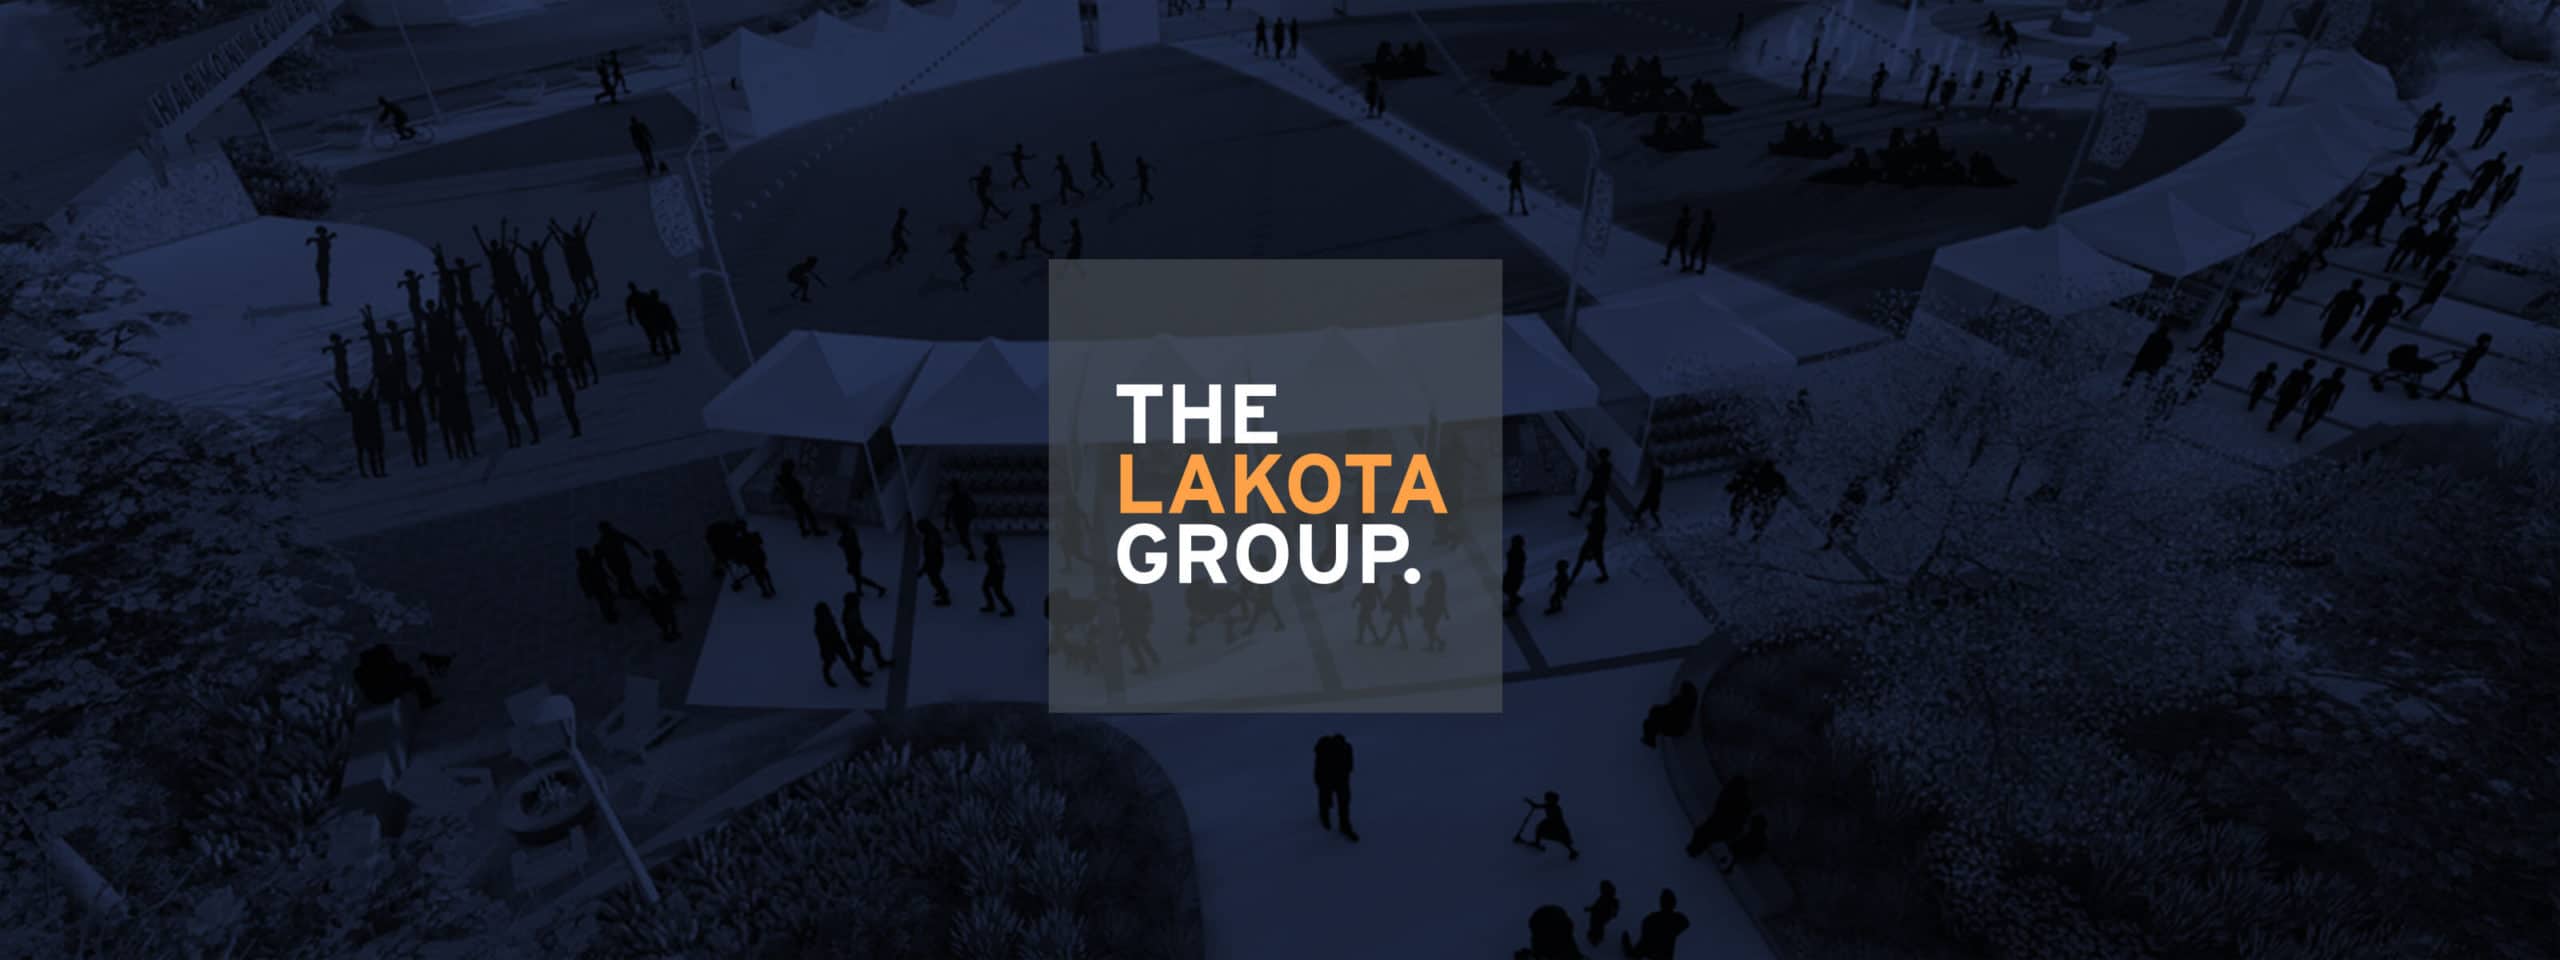 The Lakota Group logo and hero